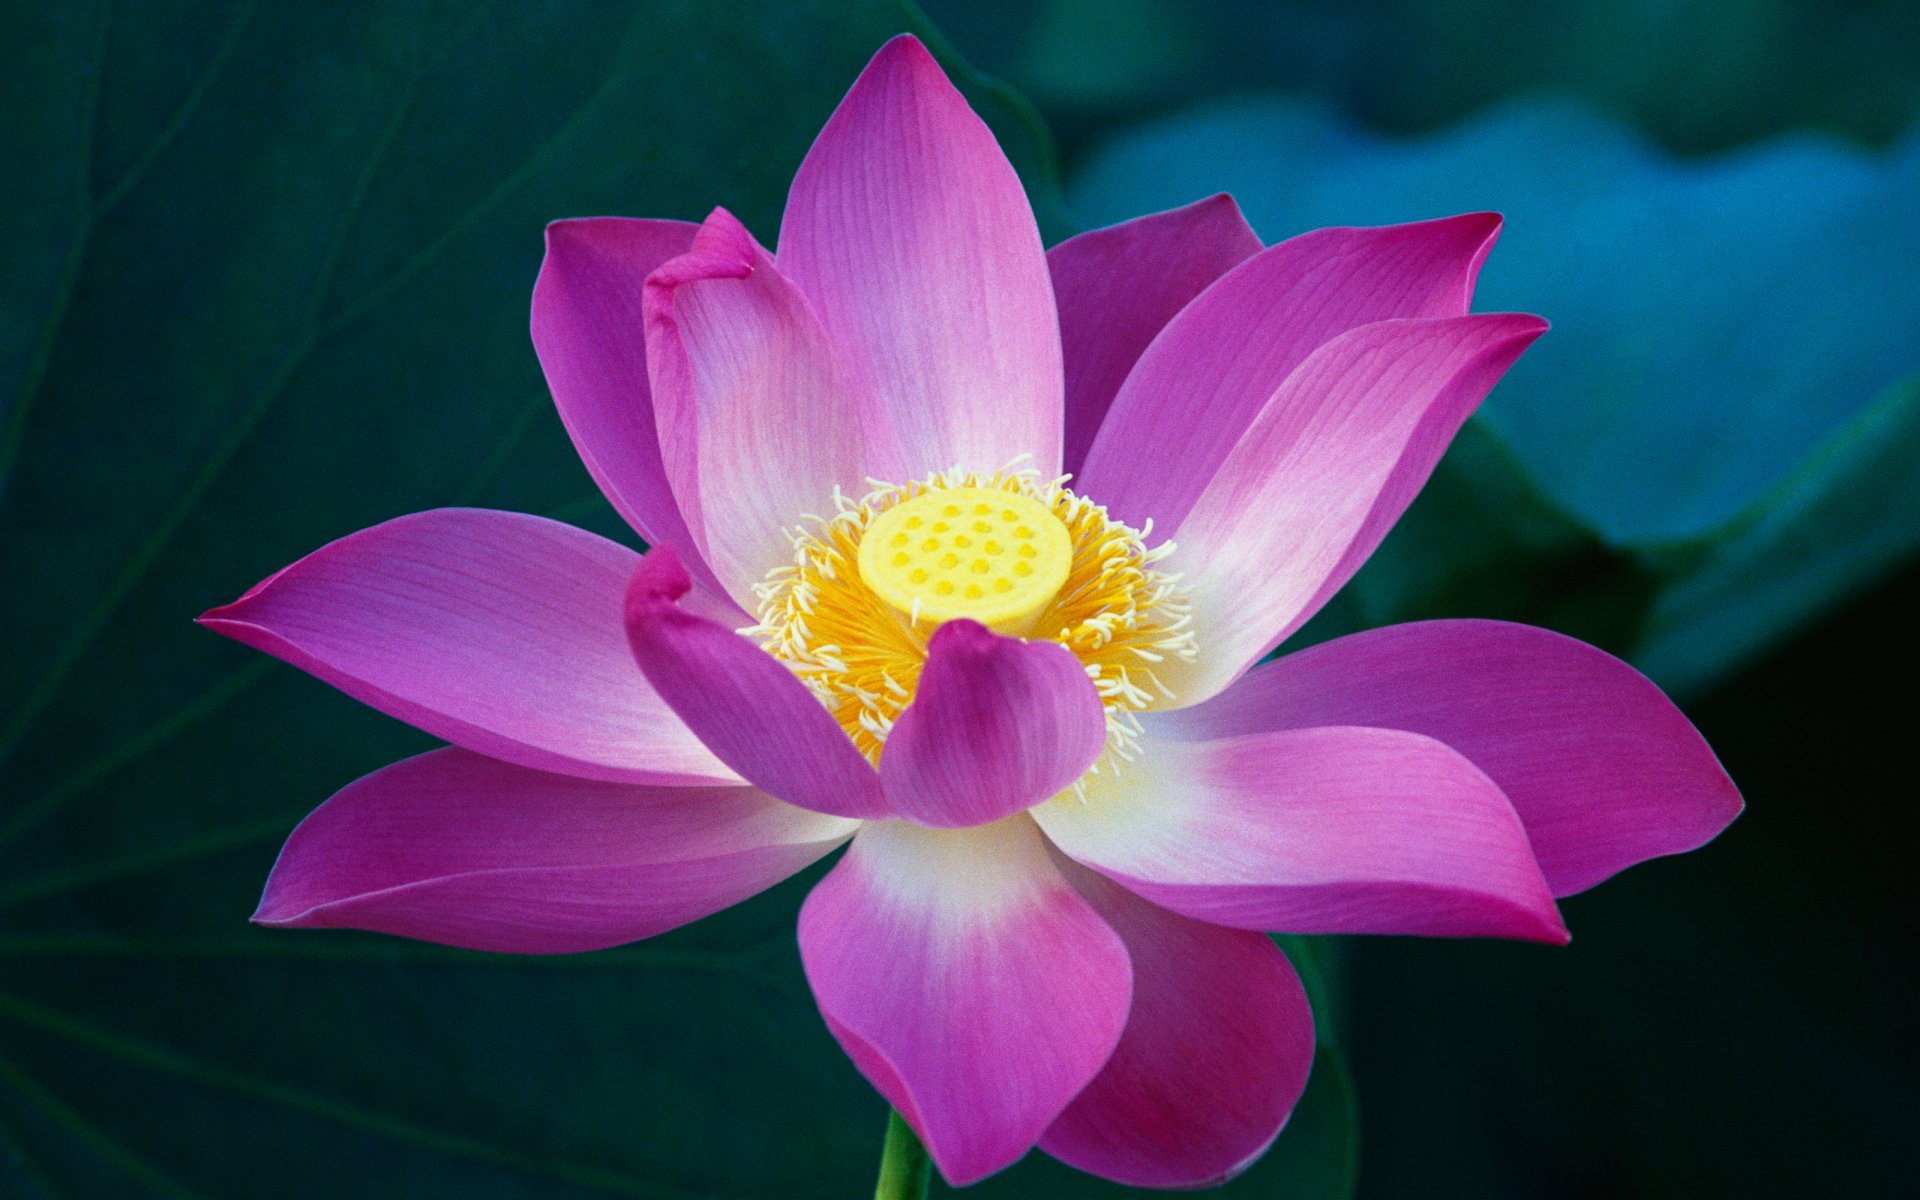 Hoa sen là đóa hoa quan trọng trong văn hóa Việt Nam. Điểm nhấn là sự thanh lịch và sáng tạo của nó, với bông hoa đẹp và nước hoa thơm ngát. Hình ảnh một đóa hoa sen sẽ khiến bạn lưu lại trong trí nhớ thật lâu. 